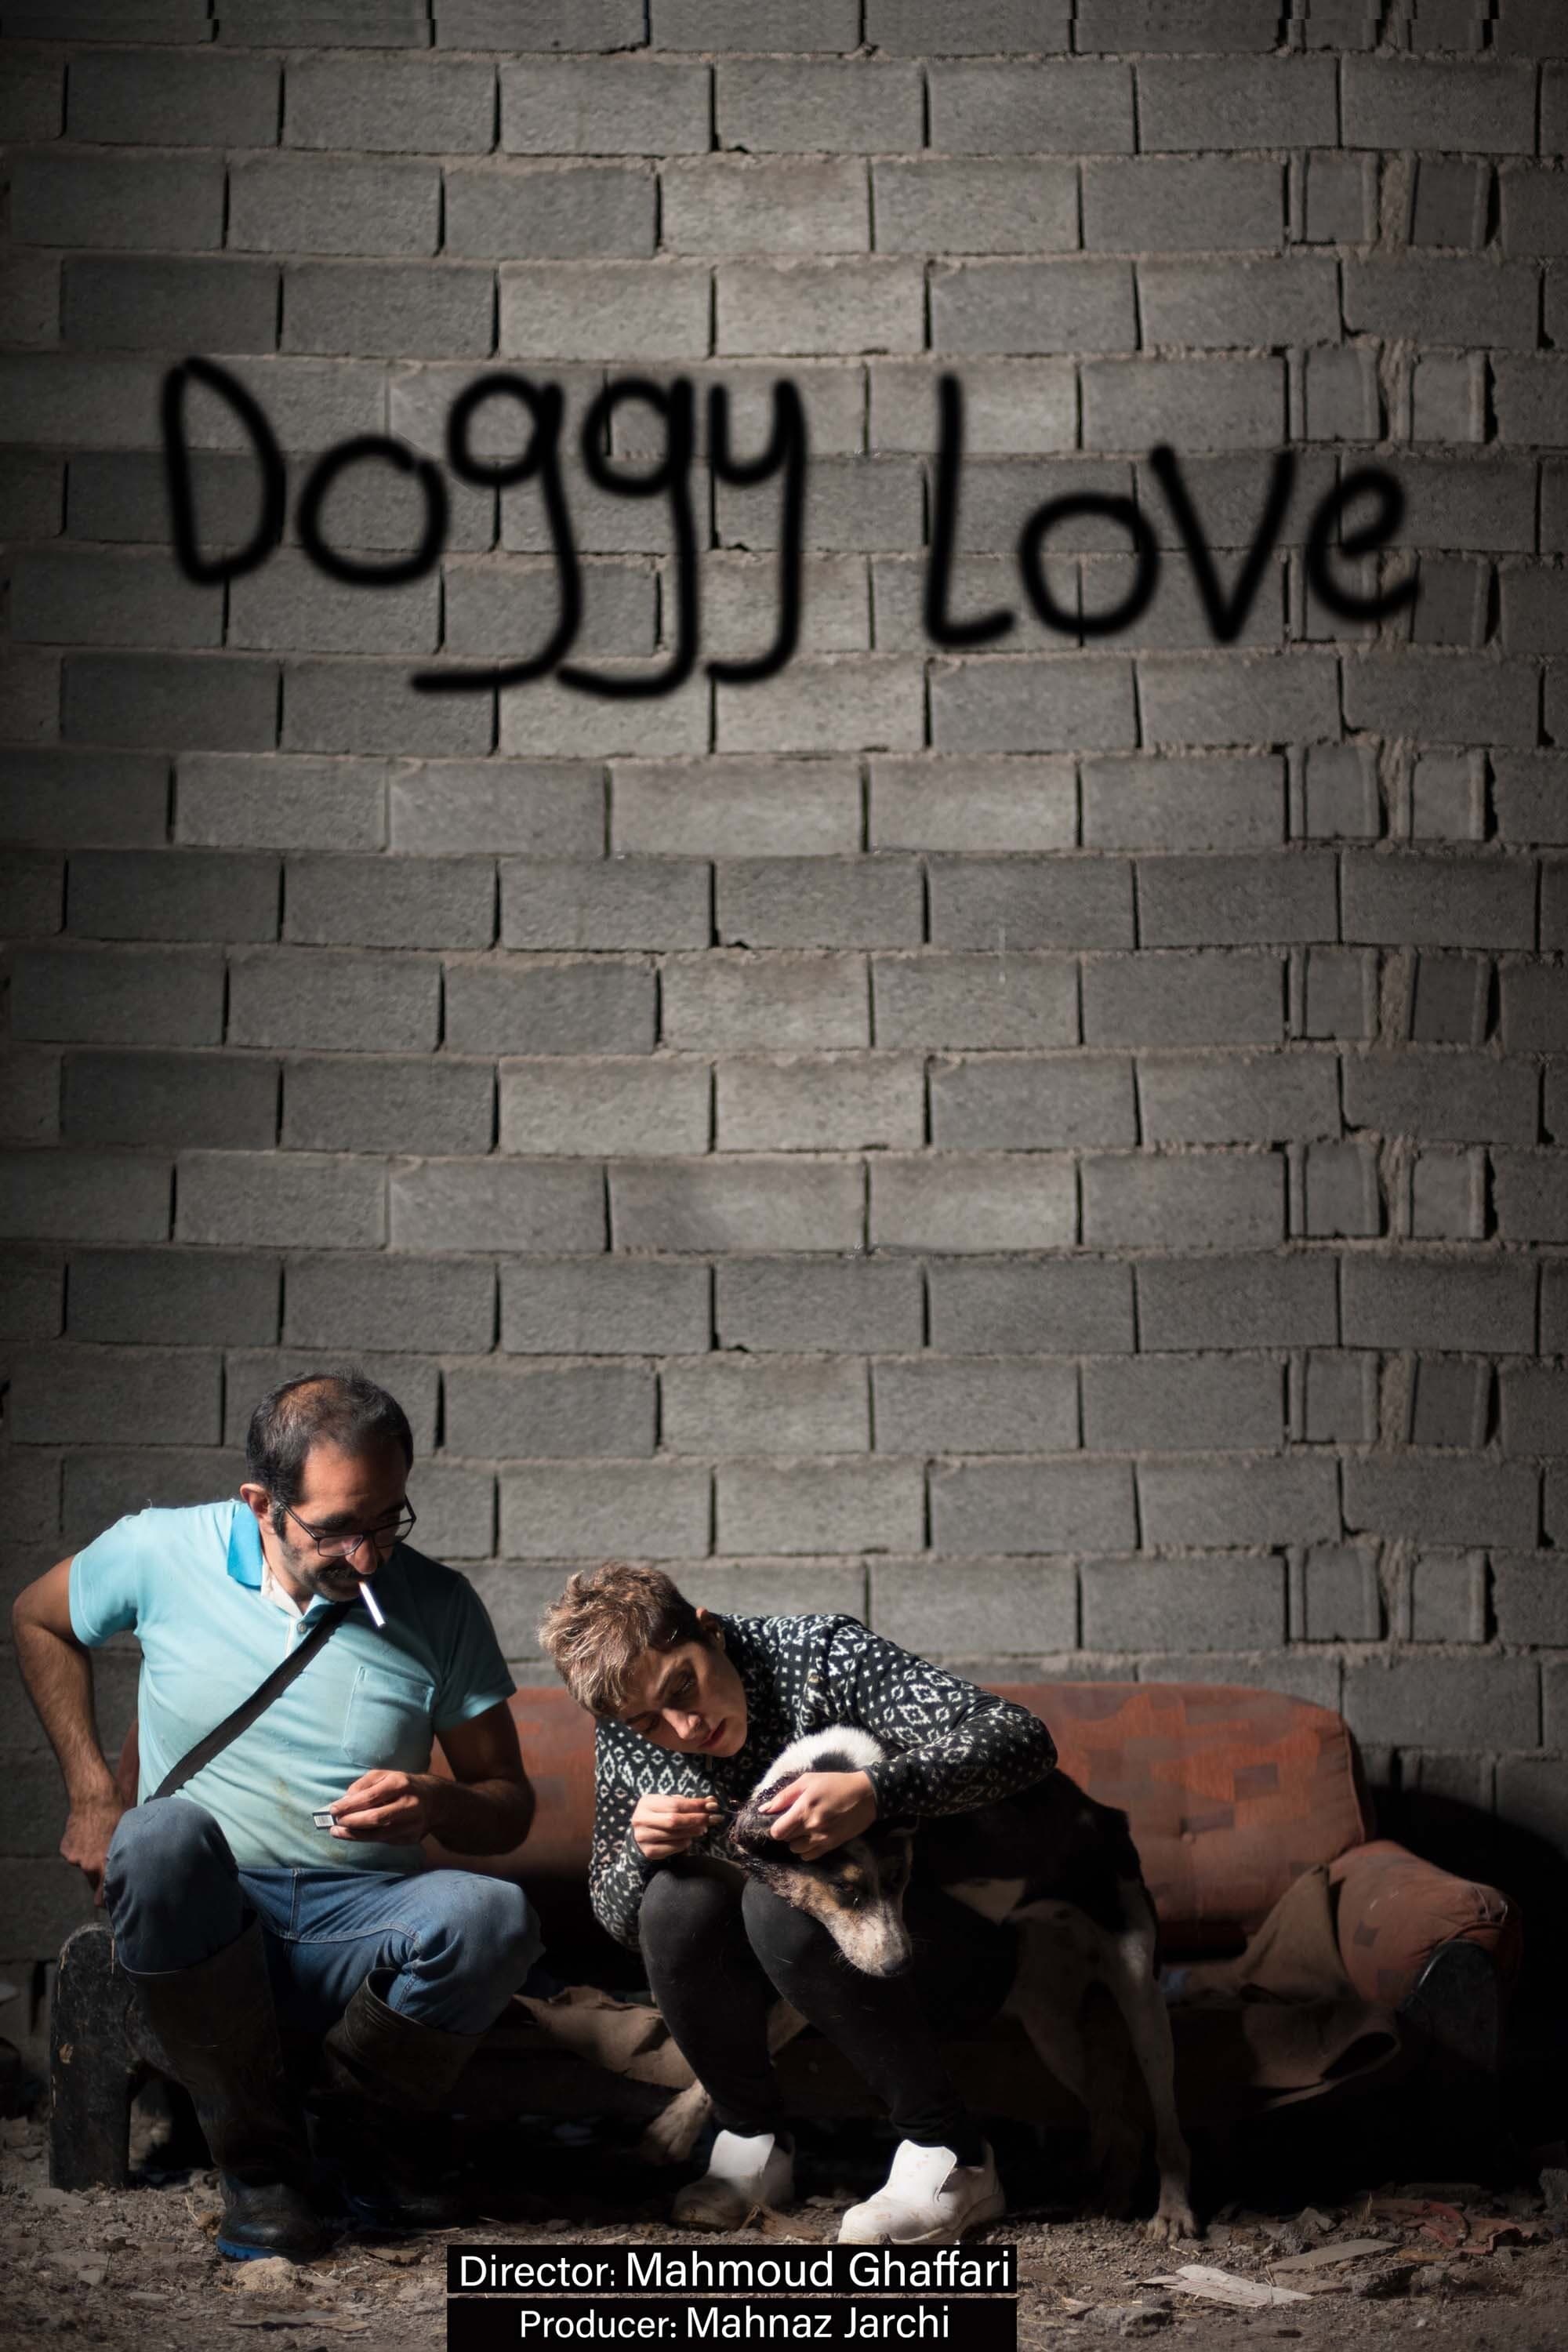 Doggy Love